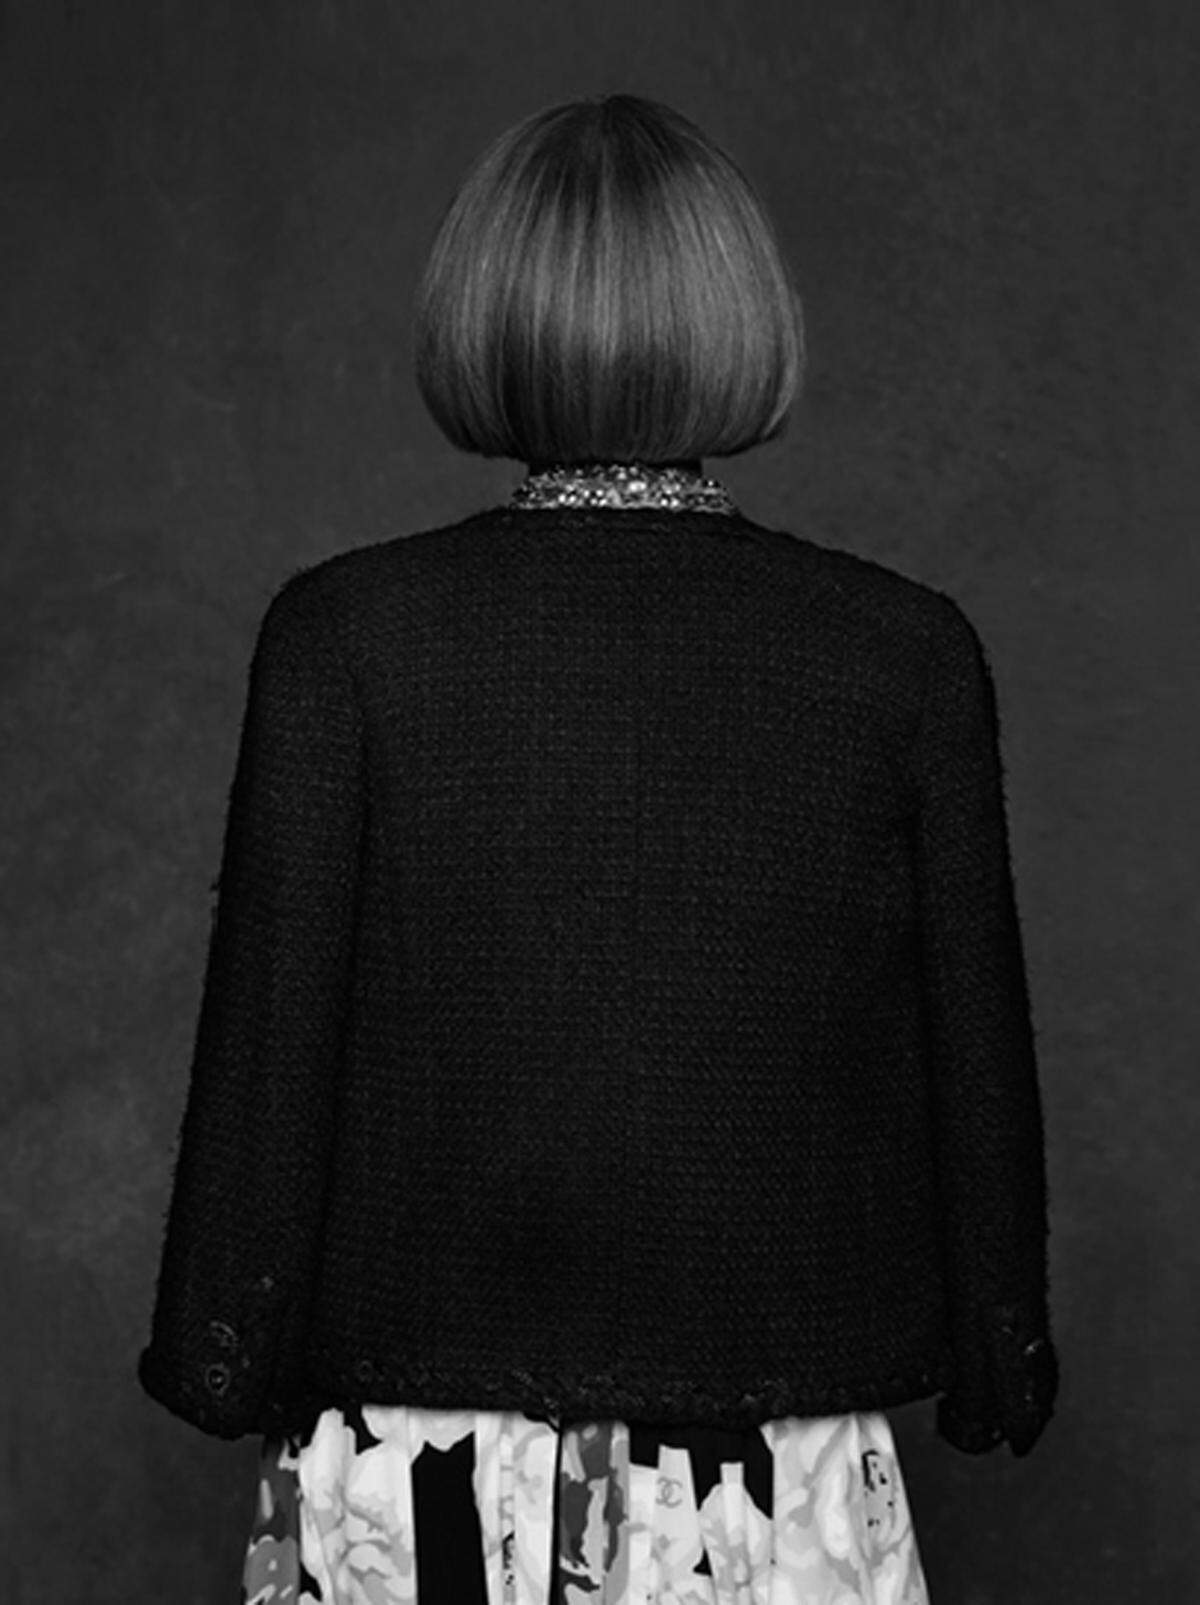 Karl Lagerfelds neuester Streich ist der Bildband "The Little Black Jacket", der über 100 Prominente in der Kult-Jacke zeigt. Erst im Herbst erscheint das Buch, doch mit einer Pressetour und Ausstellungen bekommt man schon jetzt einen Vorgeschmack auf das Werk. Vogue-Chefredakteurin Anna Wintour ist auch von hinten leicht anhand ihrer Frisur zu erkennen.